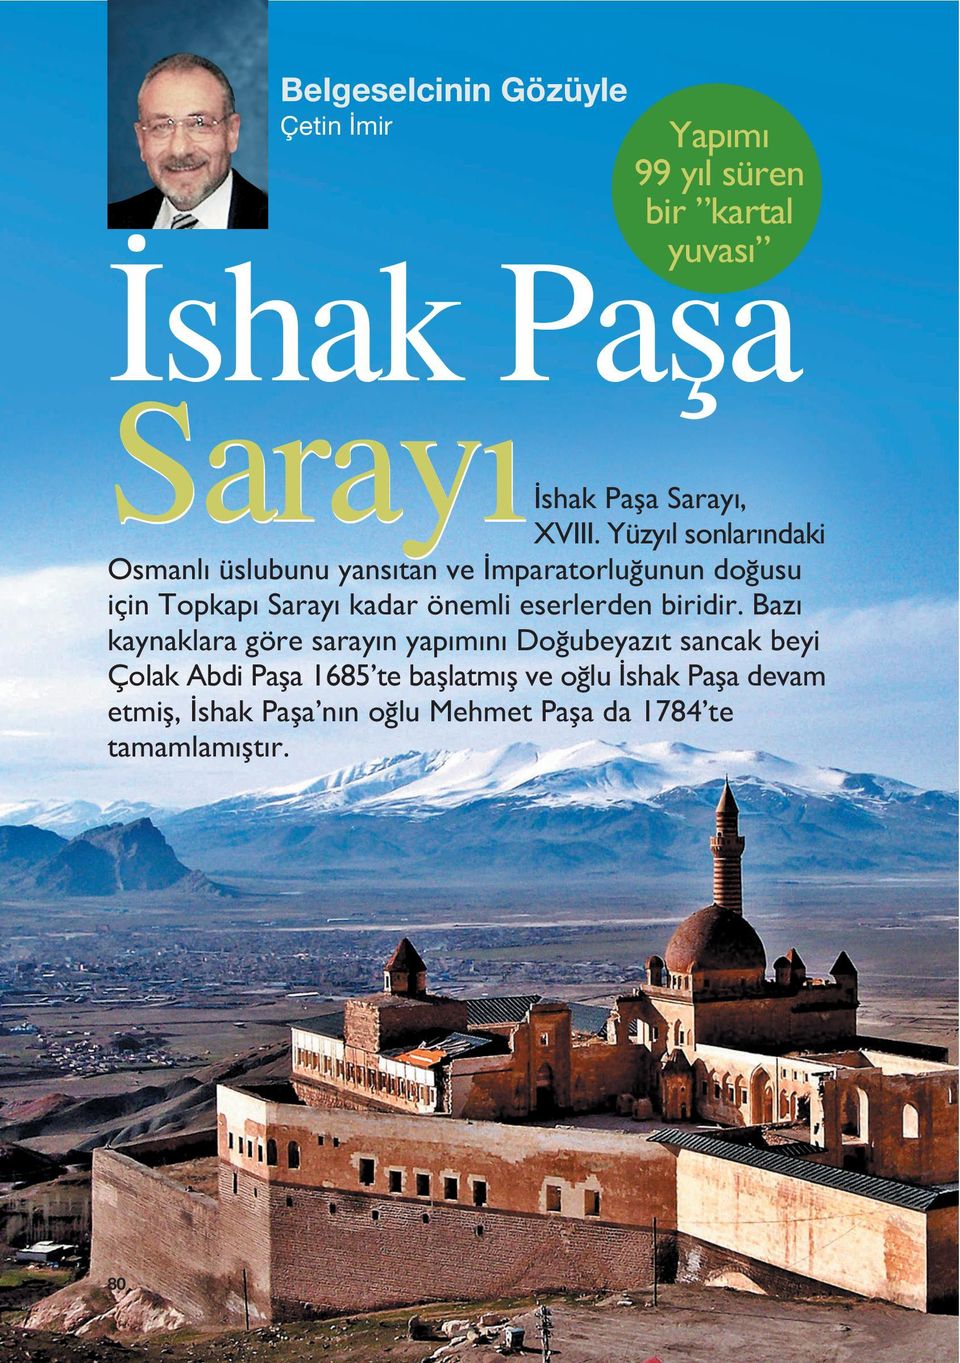 Yüzy l sonlar ndaki Osmanl üslubunu yans tan ve mparatorlu unun do usu için Topkap Saray kadar önemli